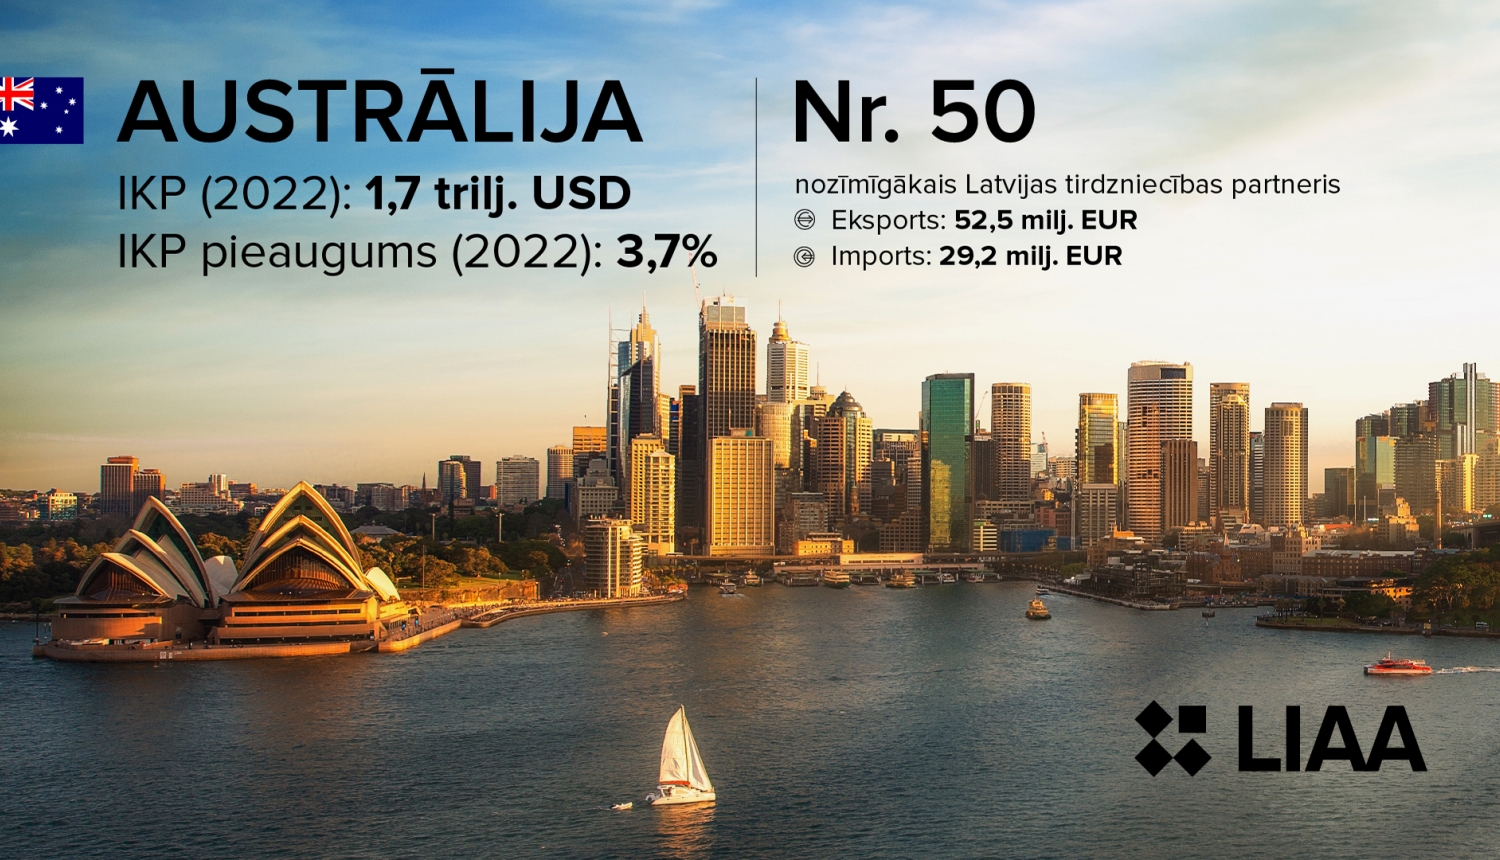 Galamērķis - Austrālija. Eksporta tirgus 14 tūkstošu kilometru attālumā